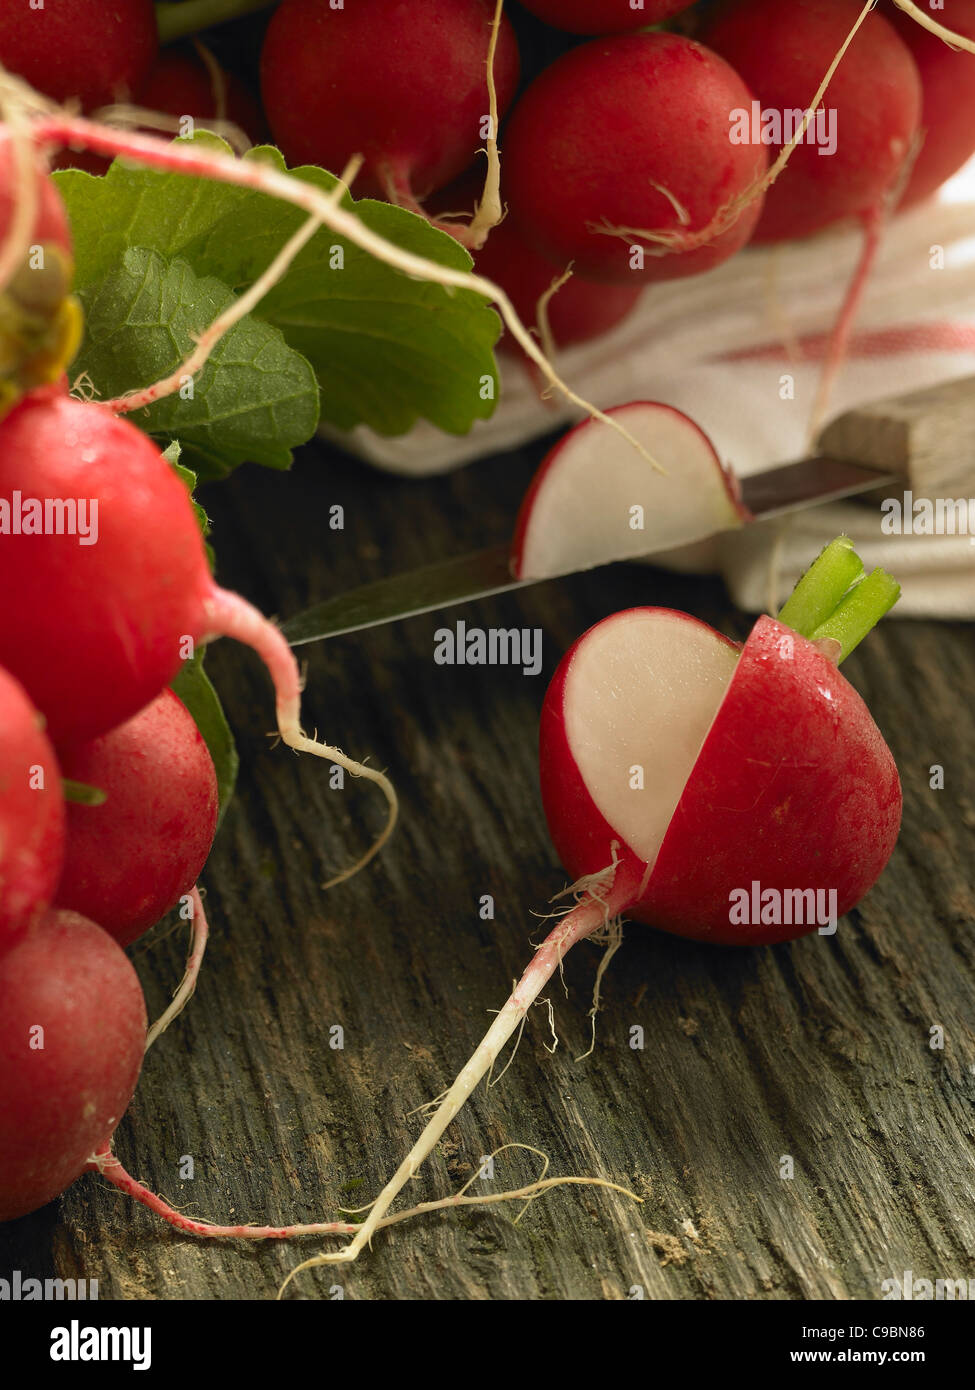 Botte de radis rouge, Close up Banque D'Images